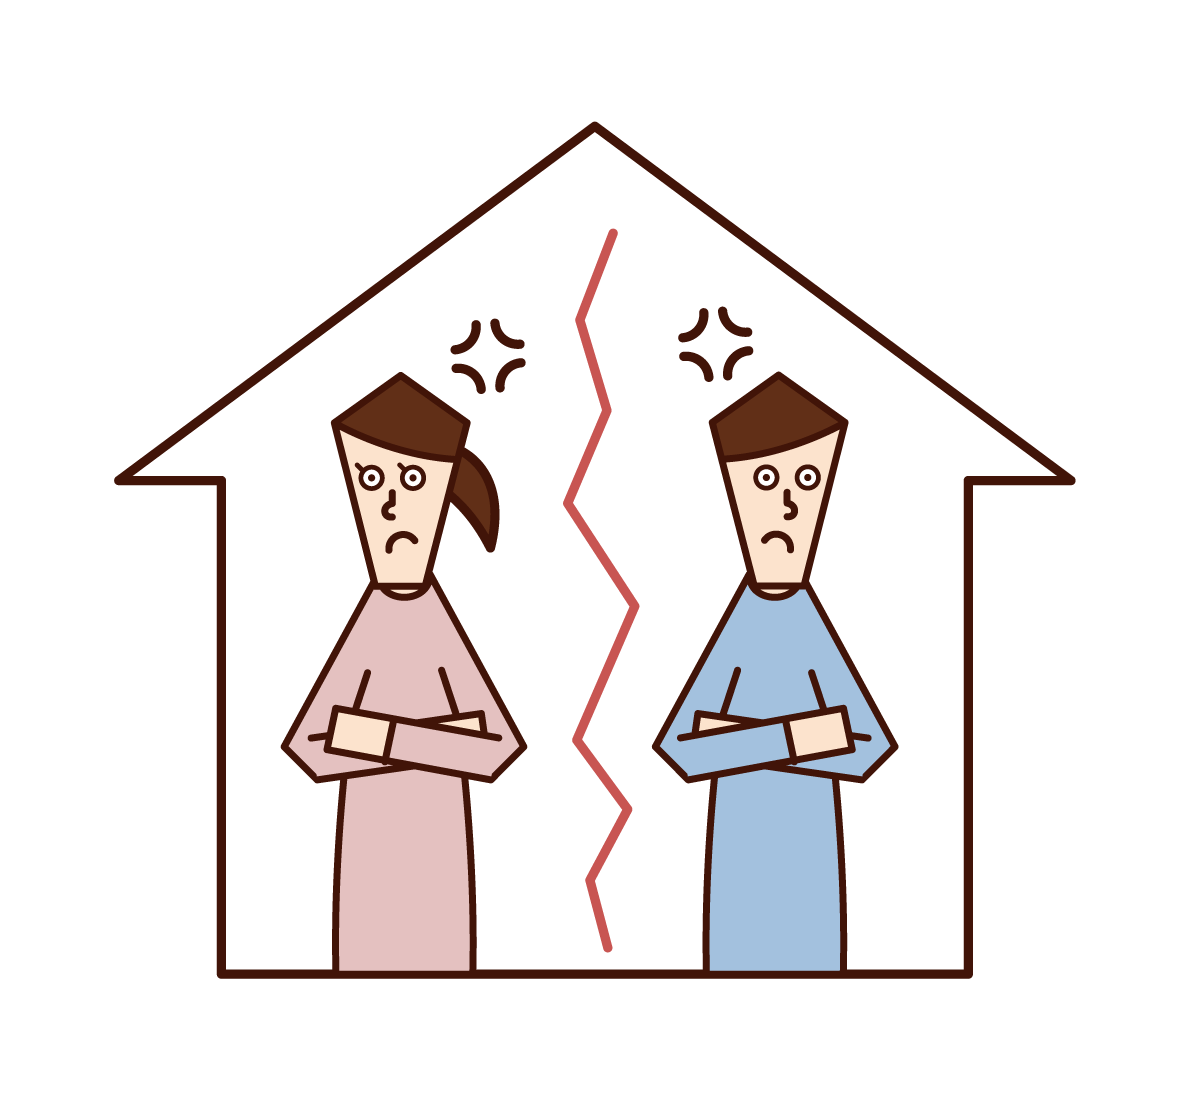 已婚夫婦爭吵和家庭分居的插圖